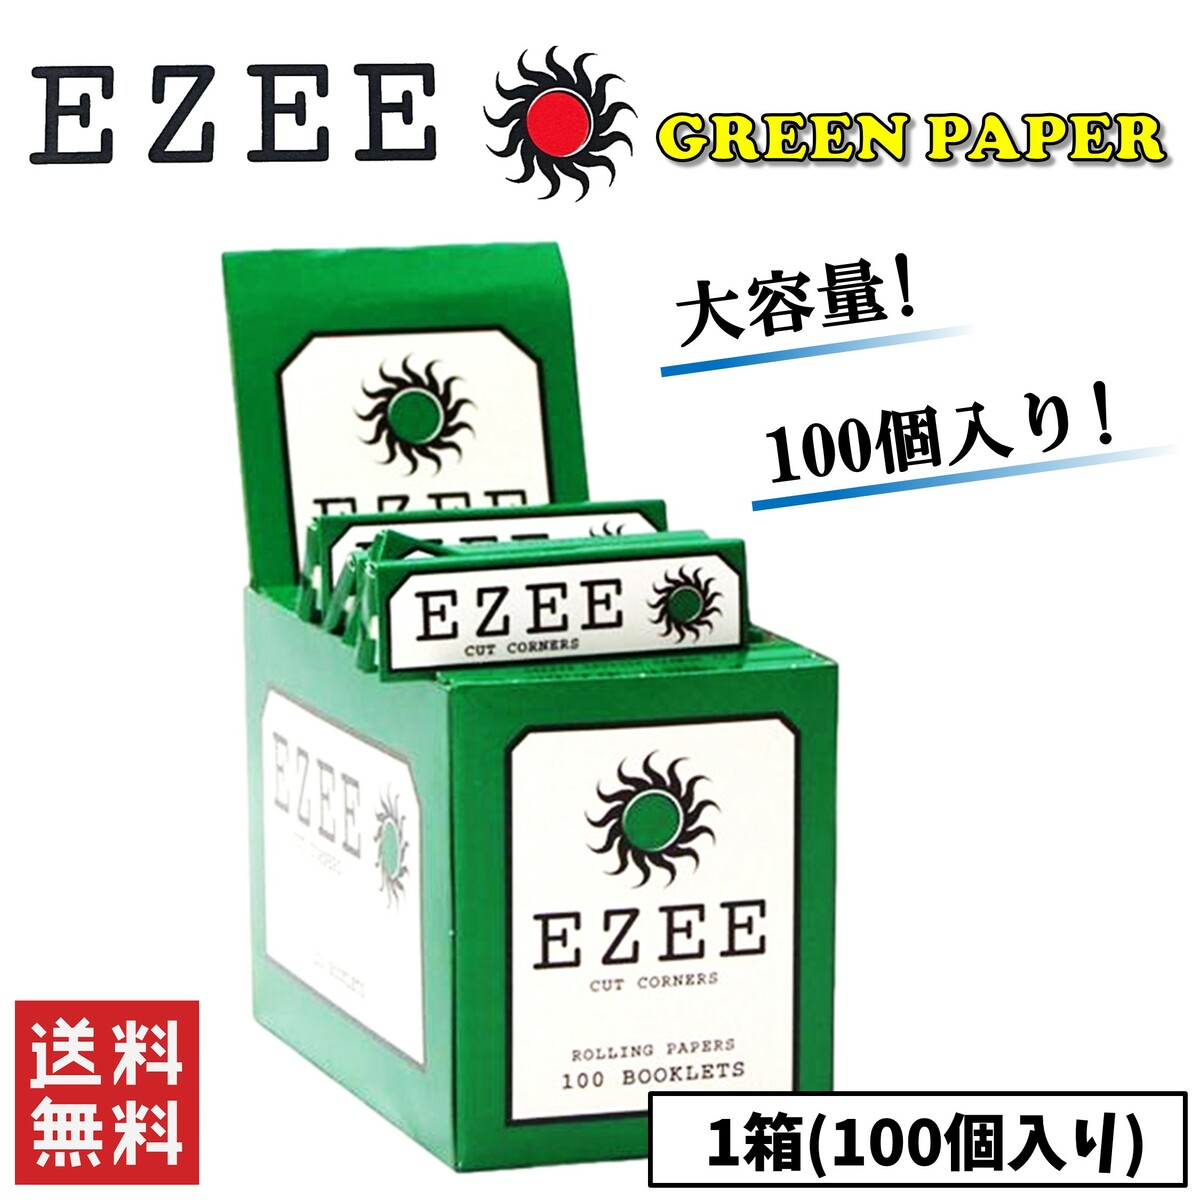 高品質新品 送料無料 【期間限定特価】 EZEE グリーン ペーパー 1箱 100個入り 喫煙具 手巻きたばこ スモーキング リズラ